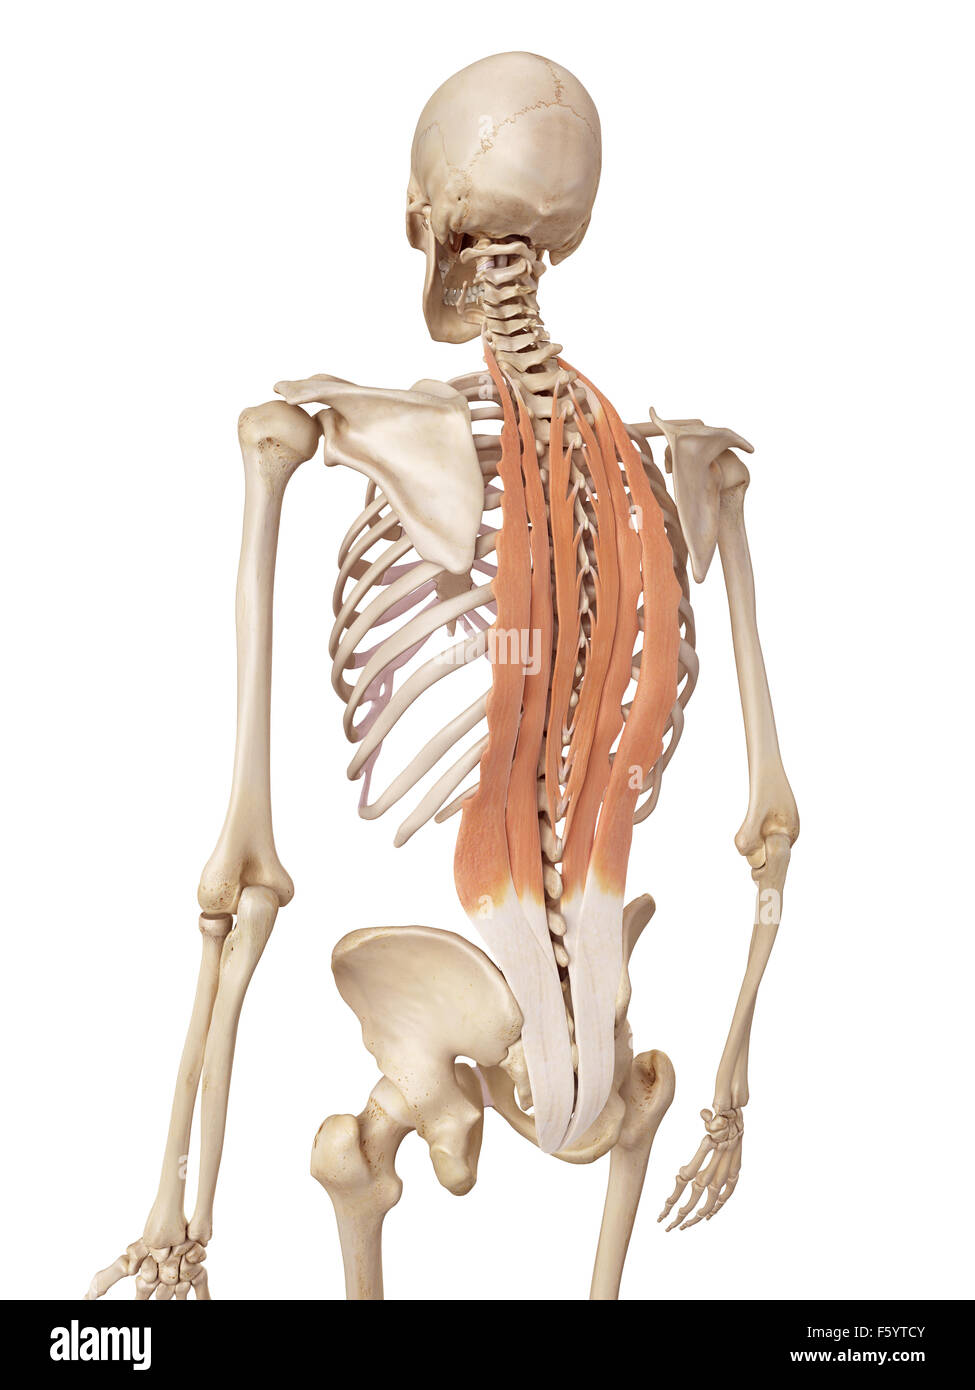 Medical precisa ilustración de los músculos de la espalda profunda Foto de stock